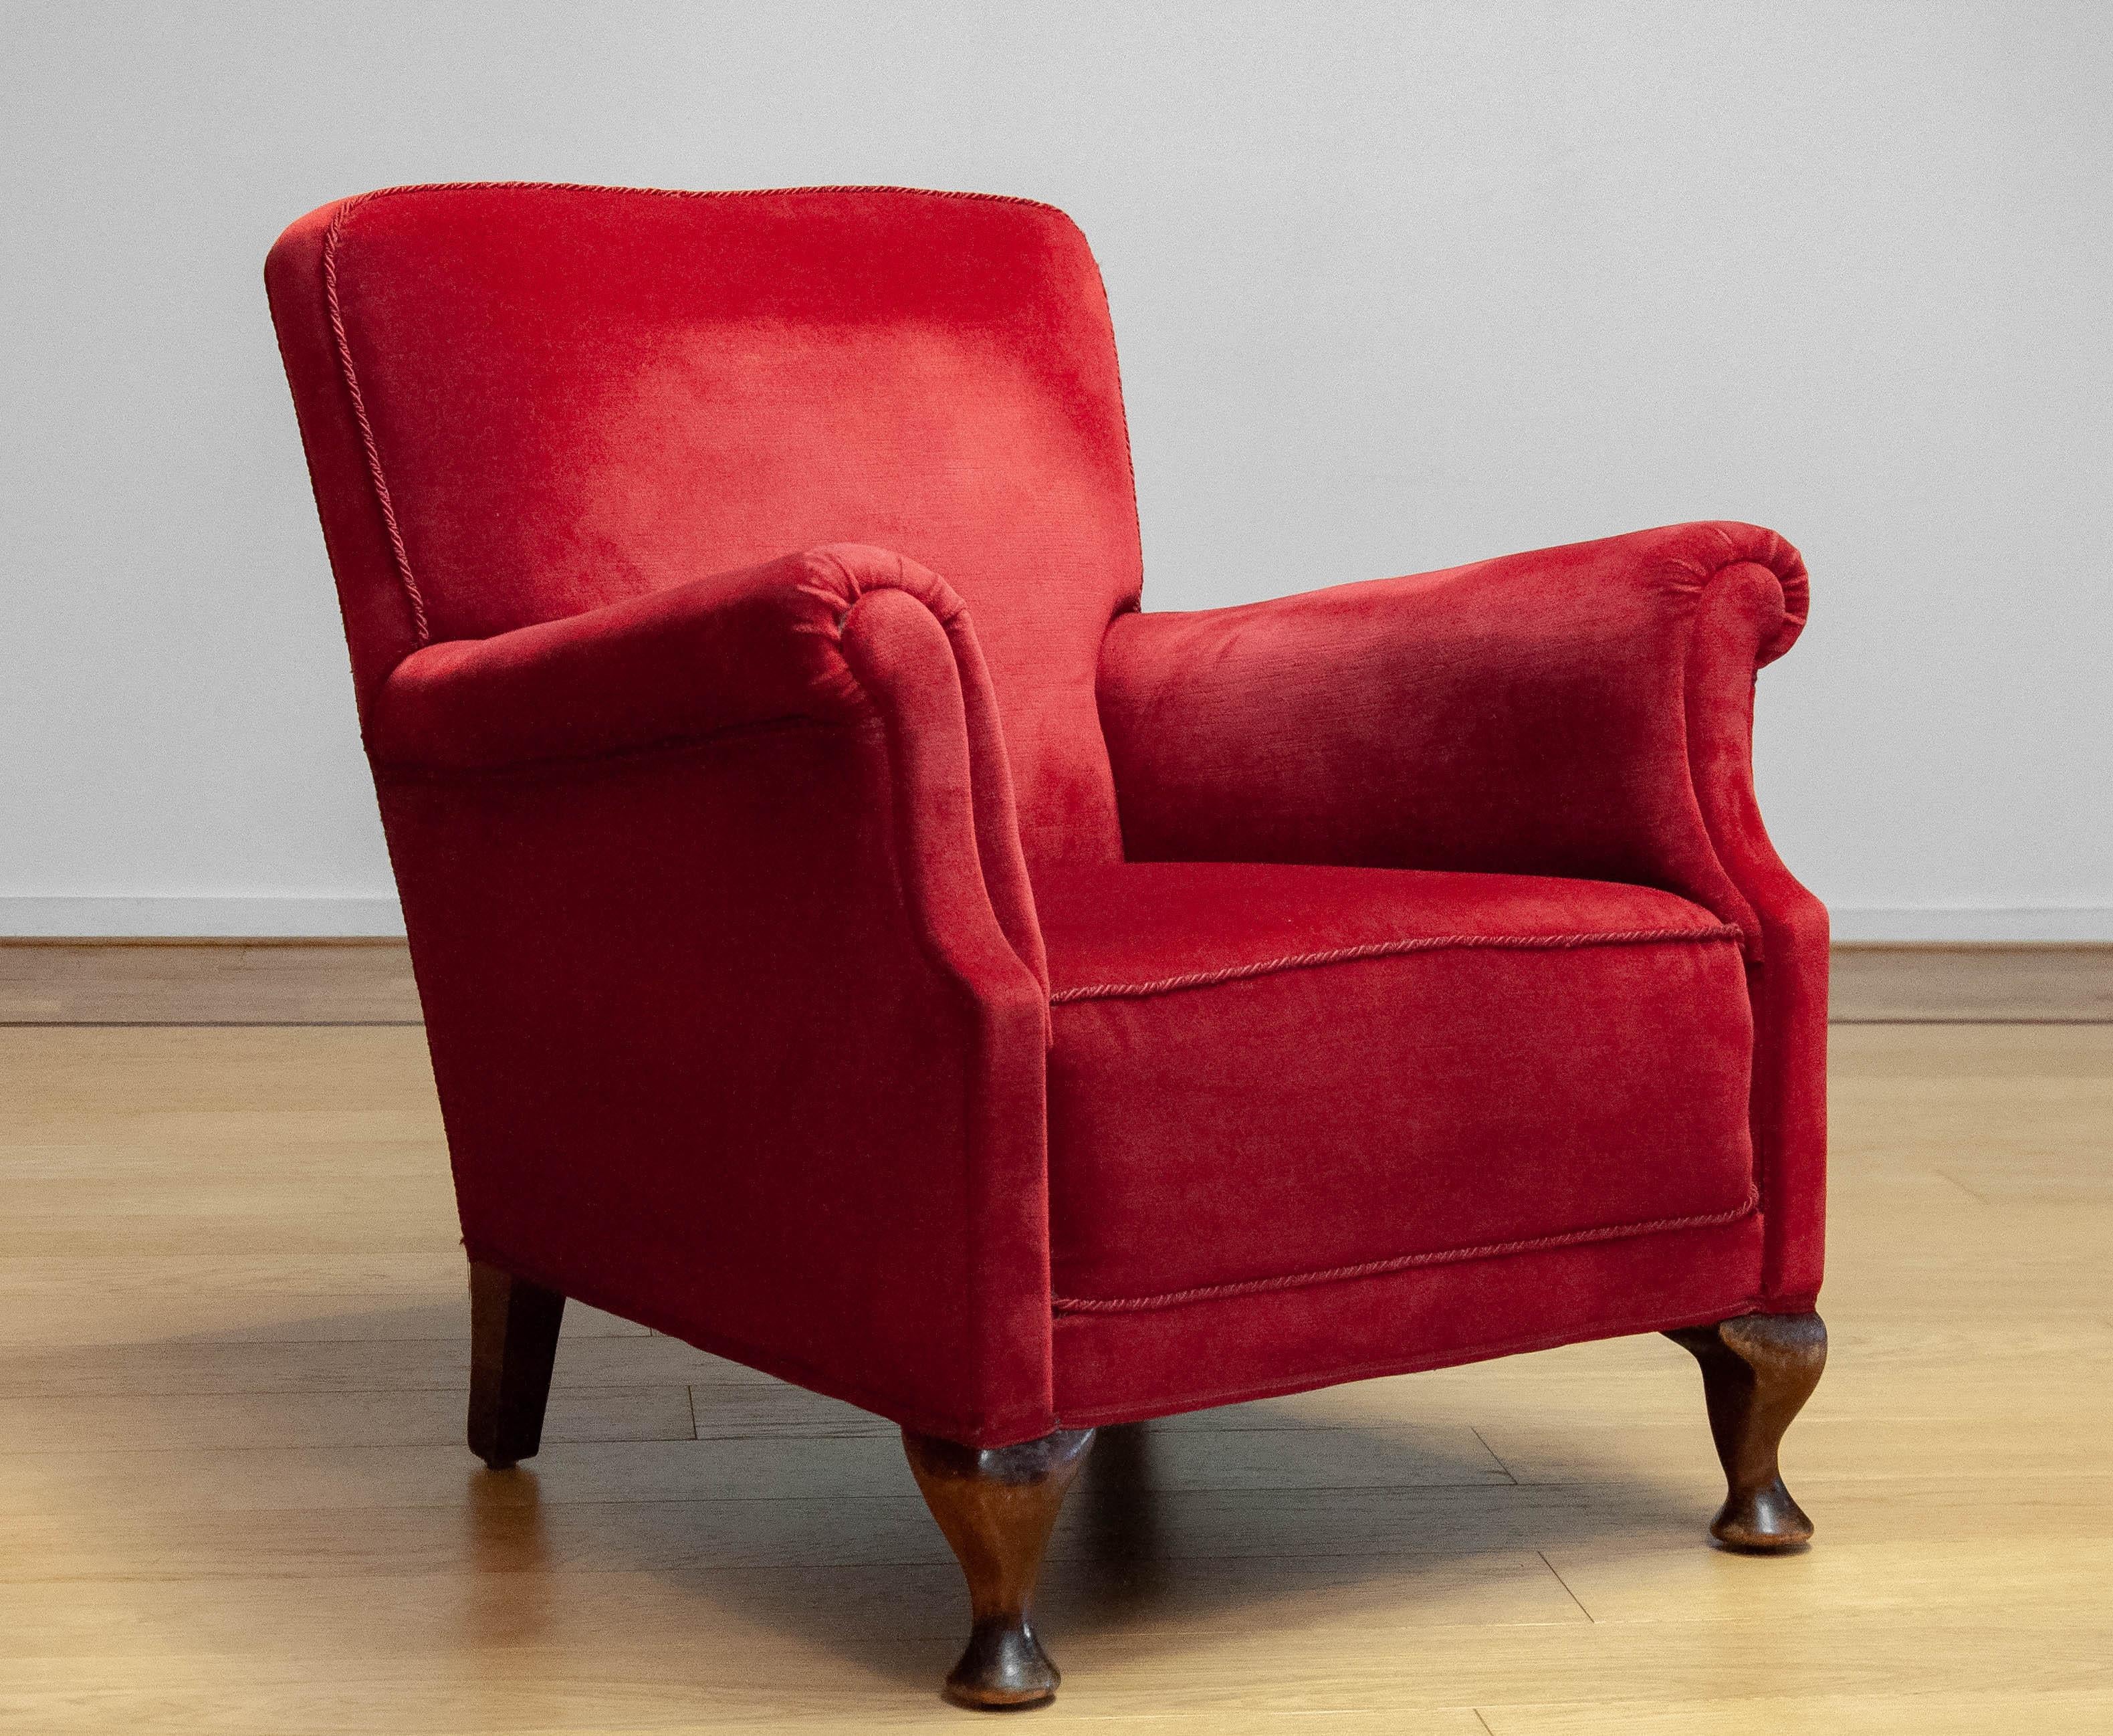 Schöner dänischer Sessel aus den 1930er Jahren, der in den 1970er Jahren mit rotem Samt / Velours neu gepolstert wurde. Die Stühle sind in einem sehr guten und sauberen Zustand und sitzen sehr bequem. Gurtband und Federn sind alle in gutem Zustand.